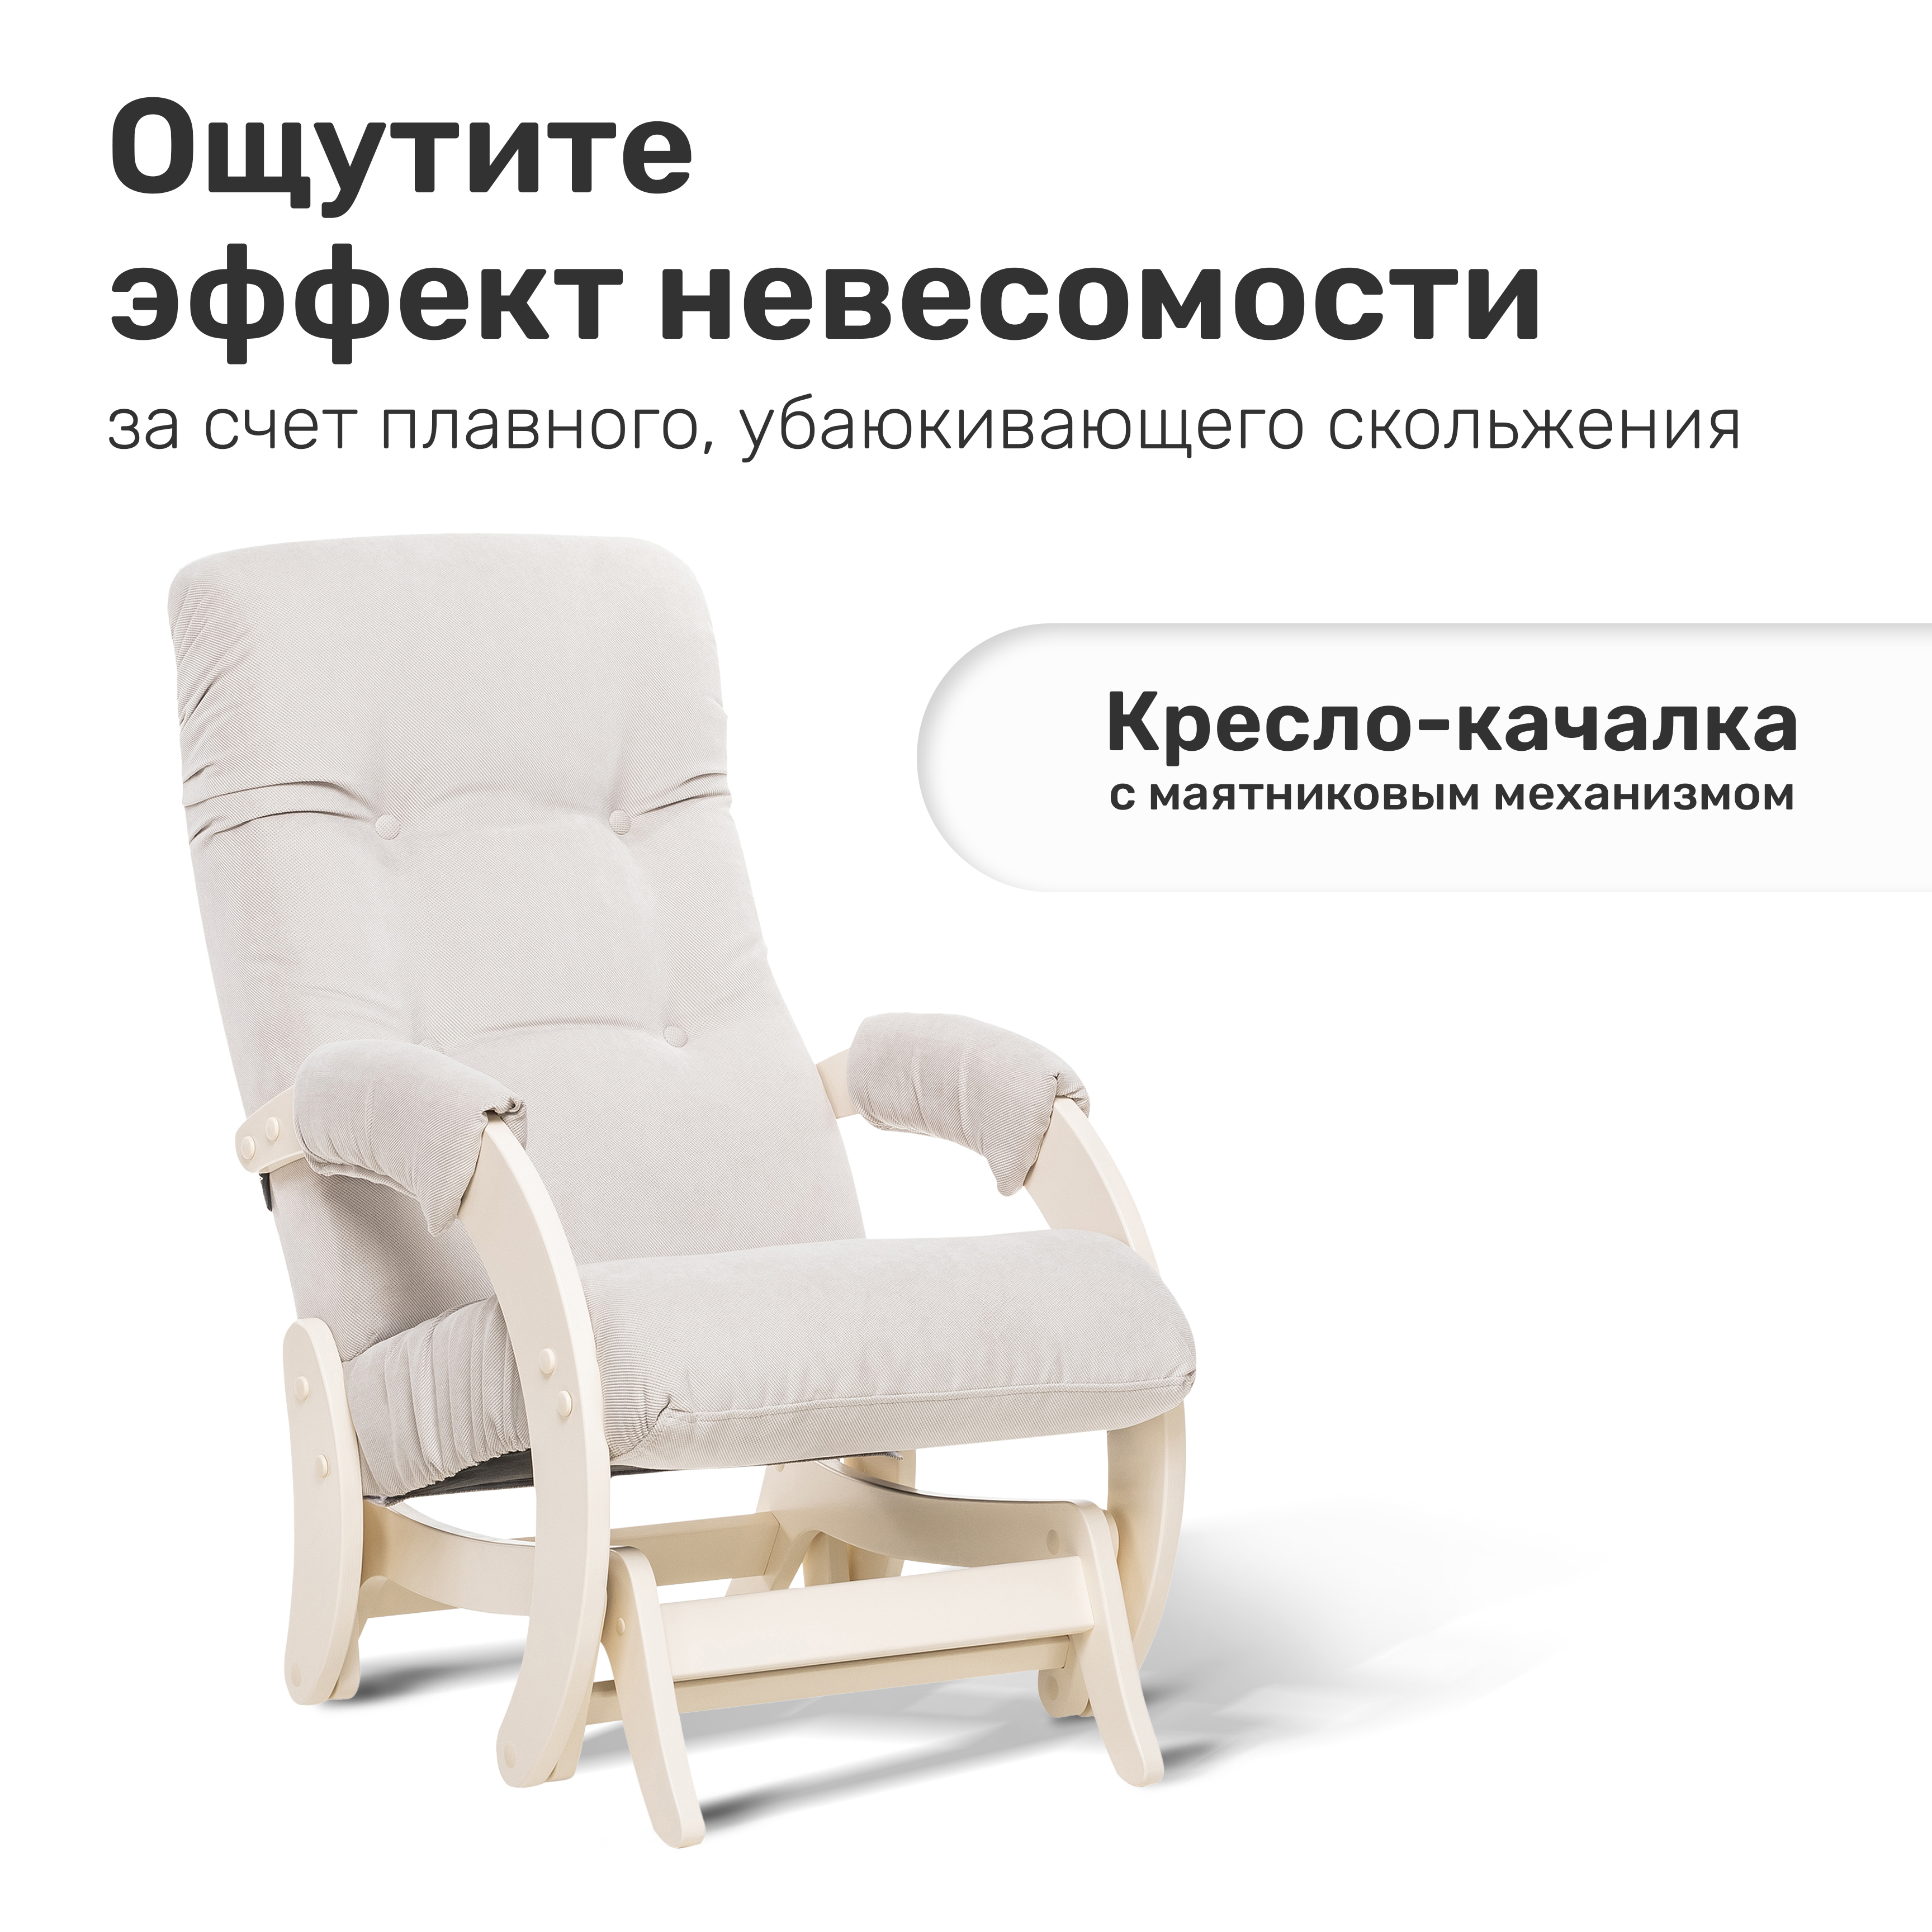 Кресло-качалка маятник модель 68, кресло-глайдер,